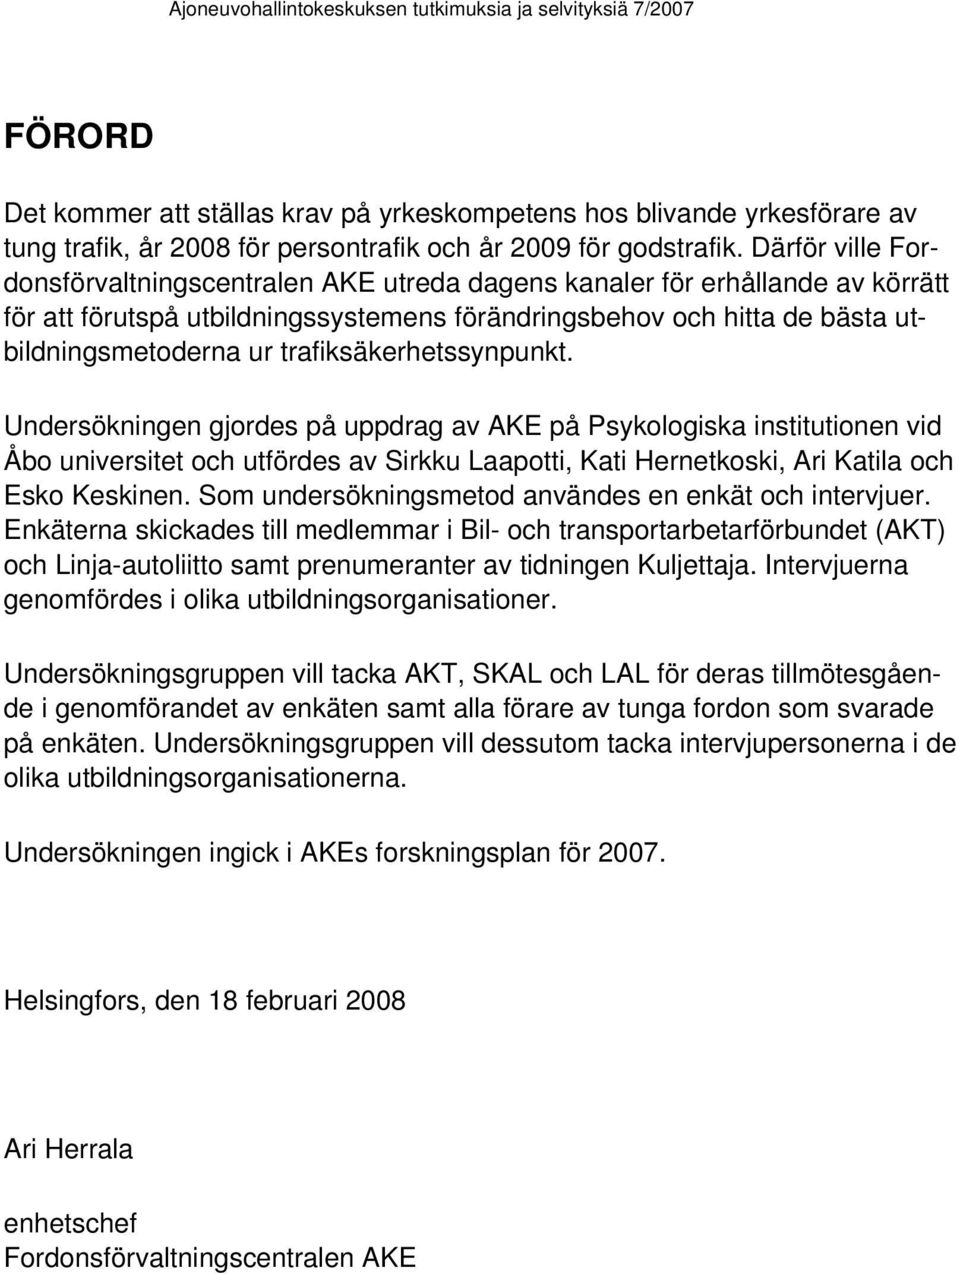 trafiksäkerhetssynpunkt. Undersökningen gjordes på uppdrag av AKE på Psykologiska institutionen vid Åbo universitet och utfördes av Sirkku Laapotti, Kati Hernetkoski, Ari Katila och Esko Keskinen.